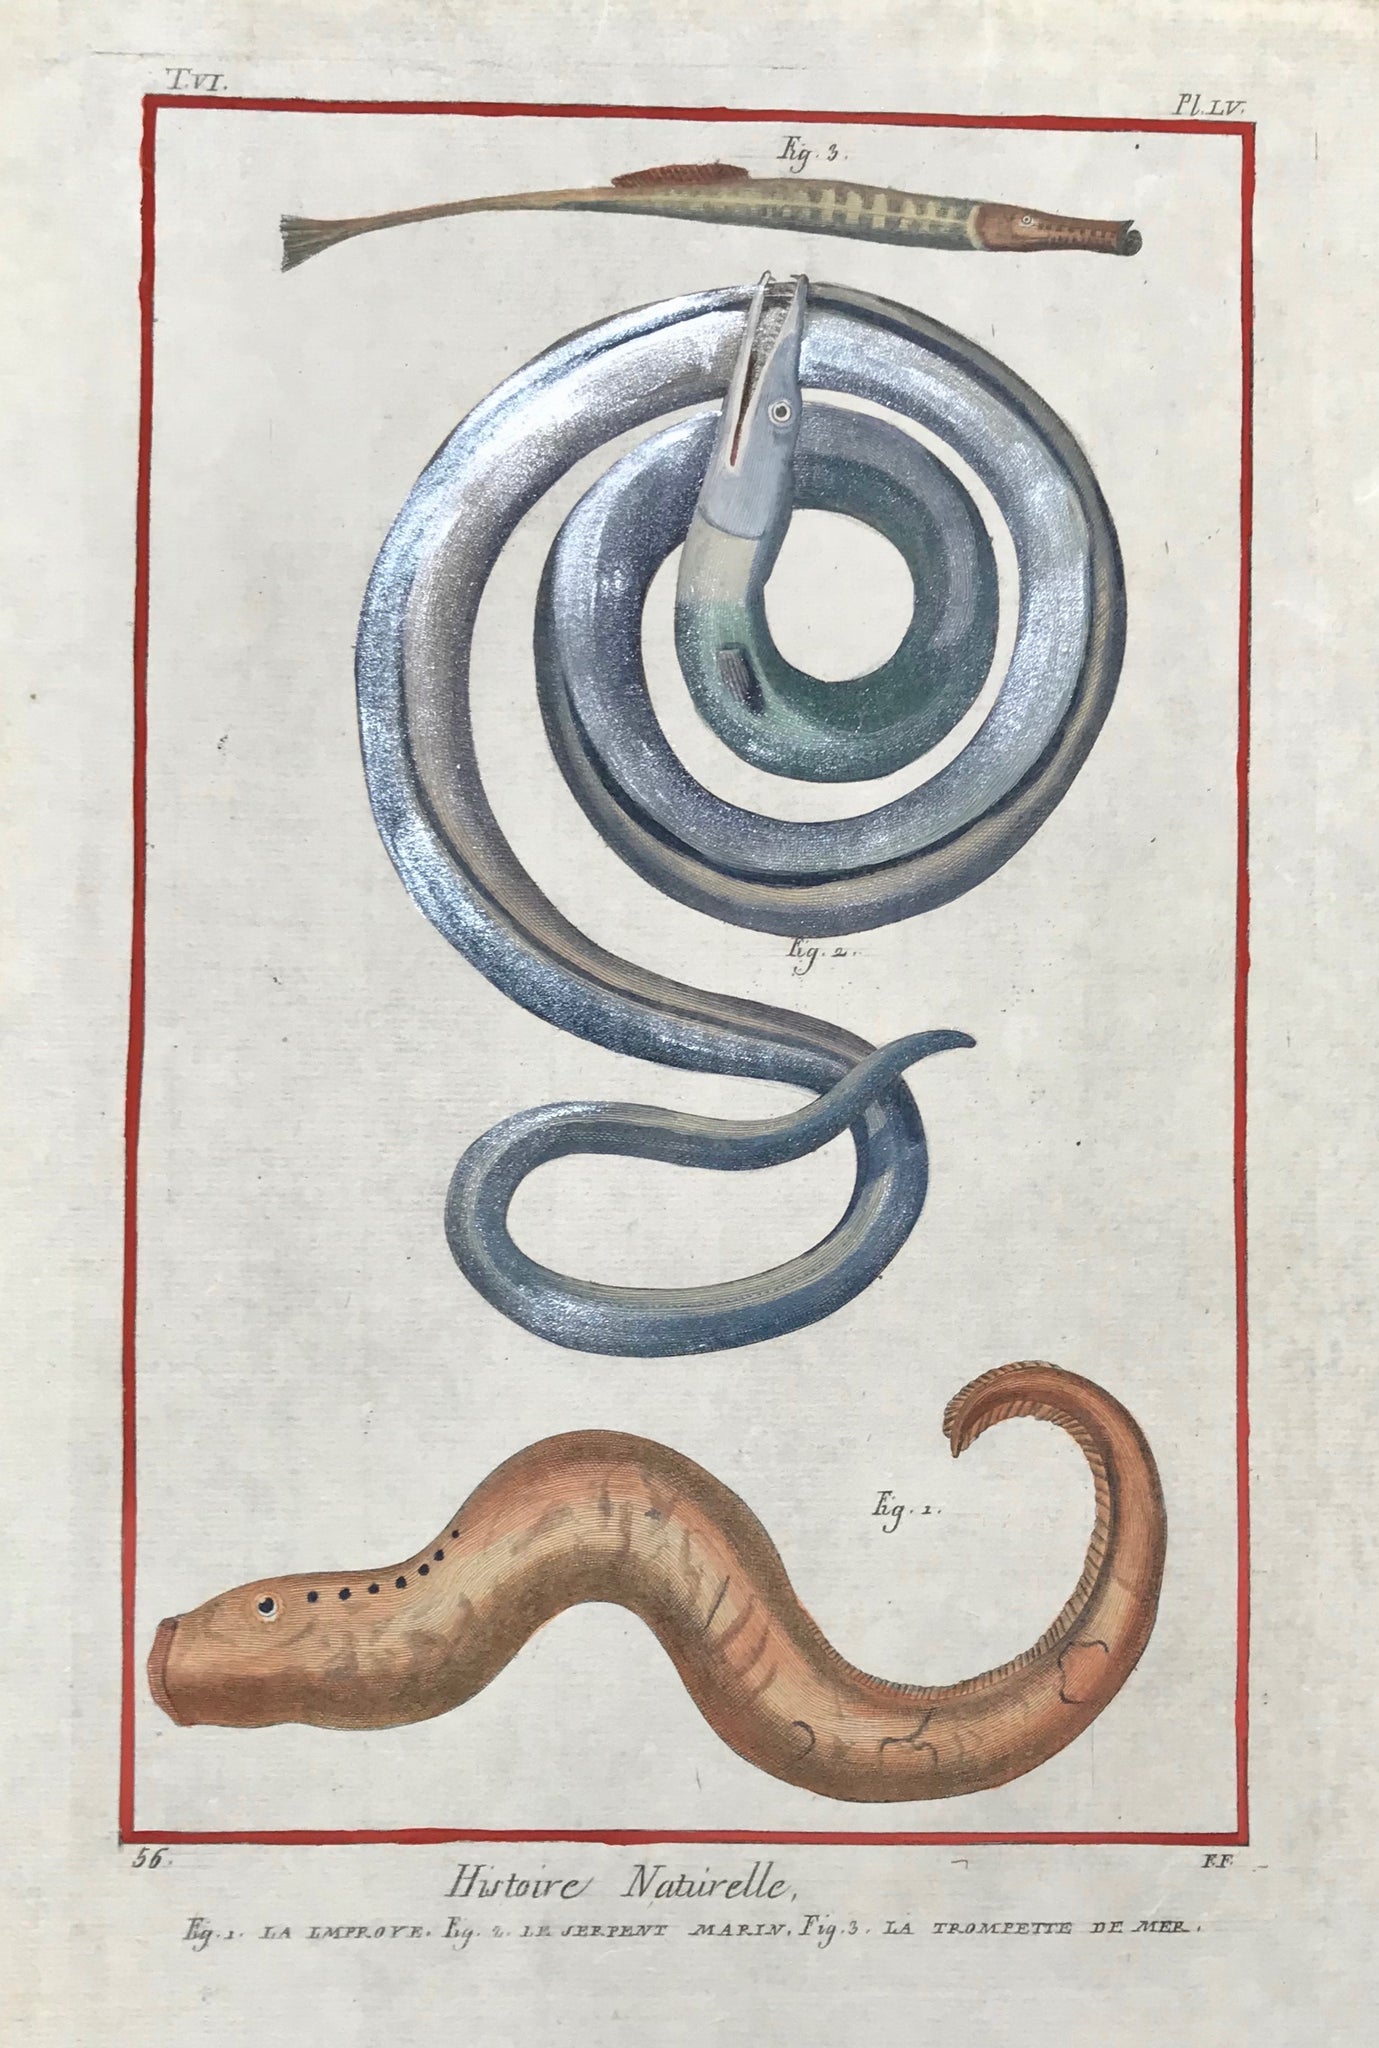 Fig. 1. La Lmproye. Fig. 2. Le Serpent Marin. Fig 3. La Trompette De Mer  Copper etching by Benard after Martinet for "Histoire Naturelle", published 1751 in Paris. Binding marks on left margin edge.